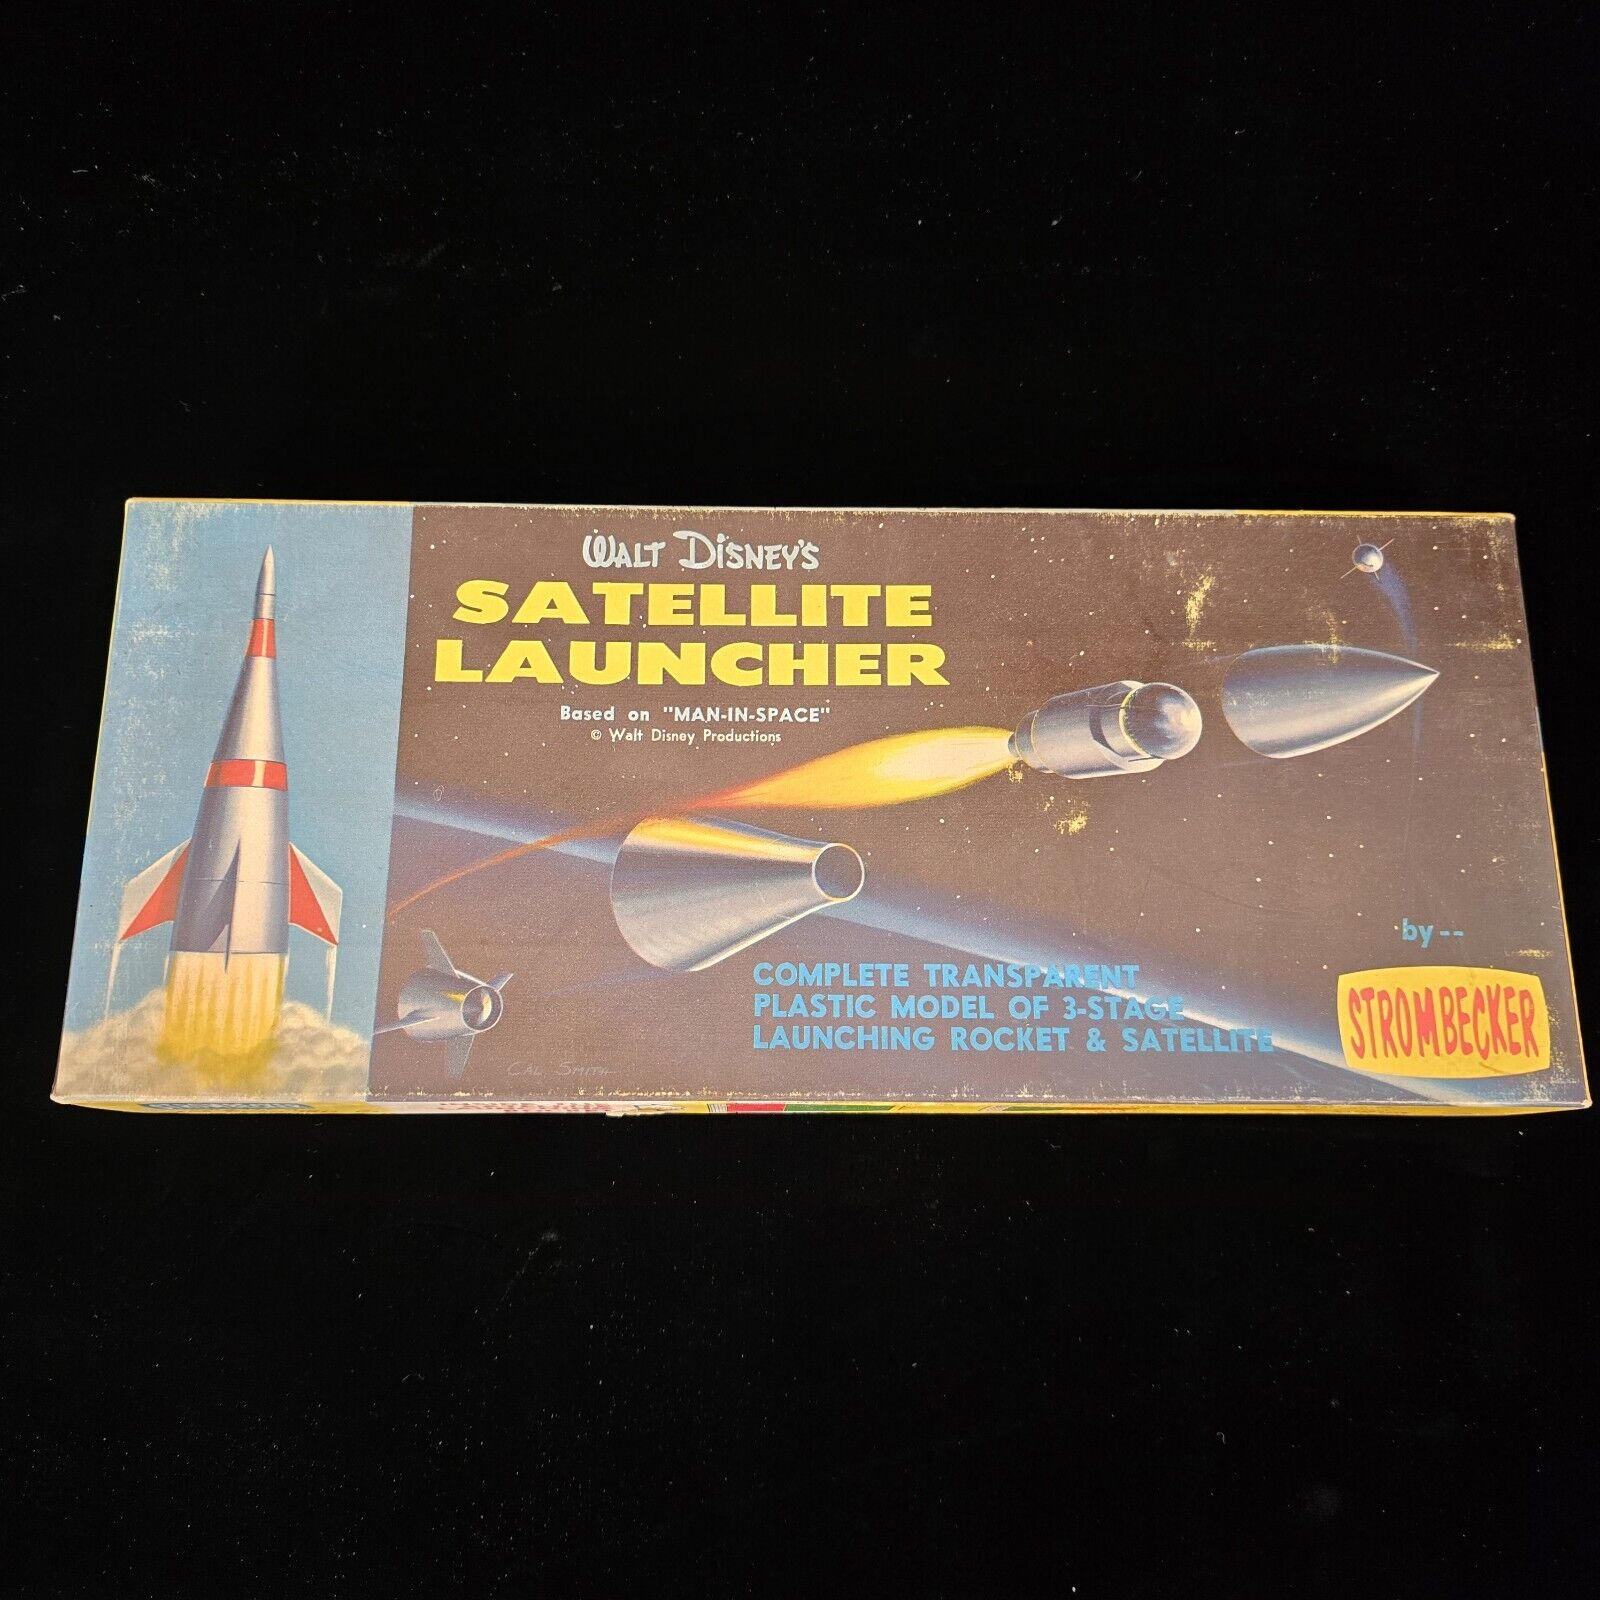 Walt Disneys Satellite Launcher by Strombecker Model Kit